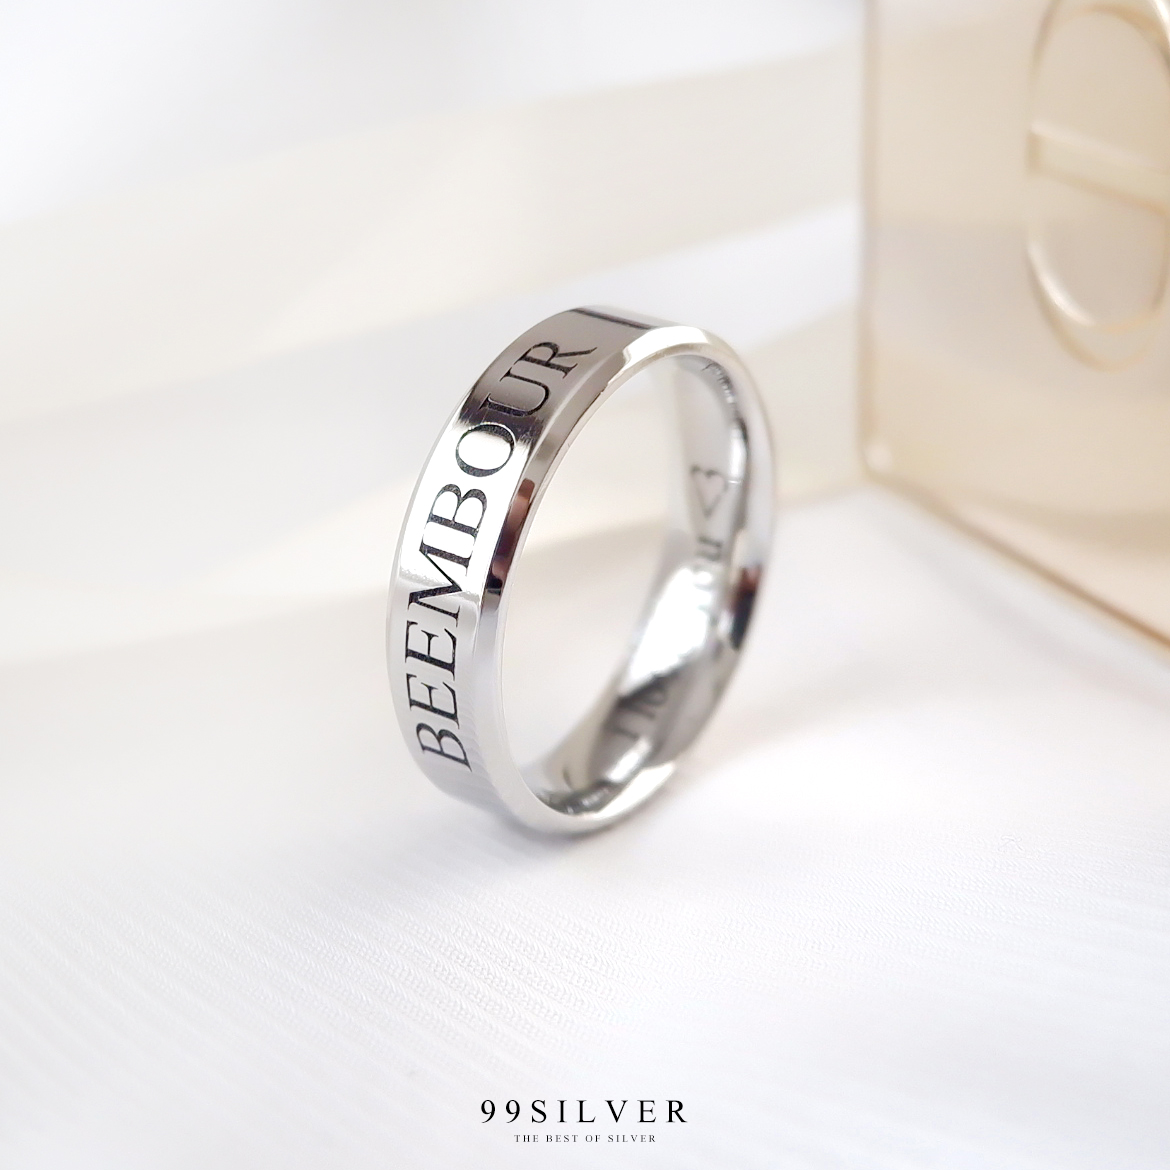 แหวนสแตนเลสแท้หน้ากว้าง 6 มิลลิเมตร ขอบลดมุมตัดสวยงาม ตัวเรือนสีเงินเงา